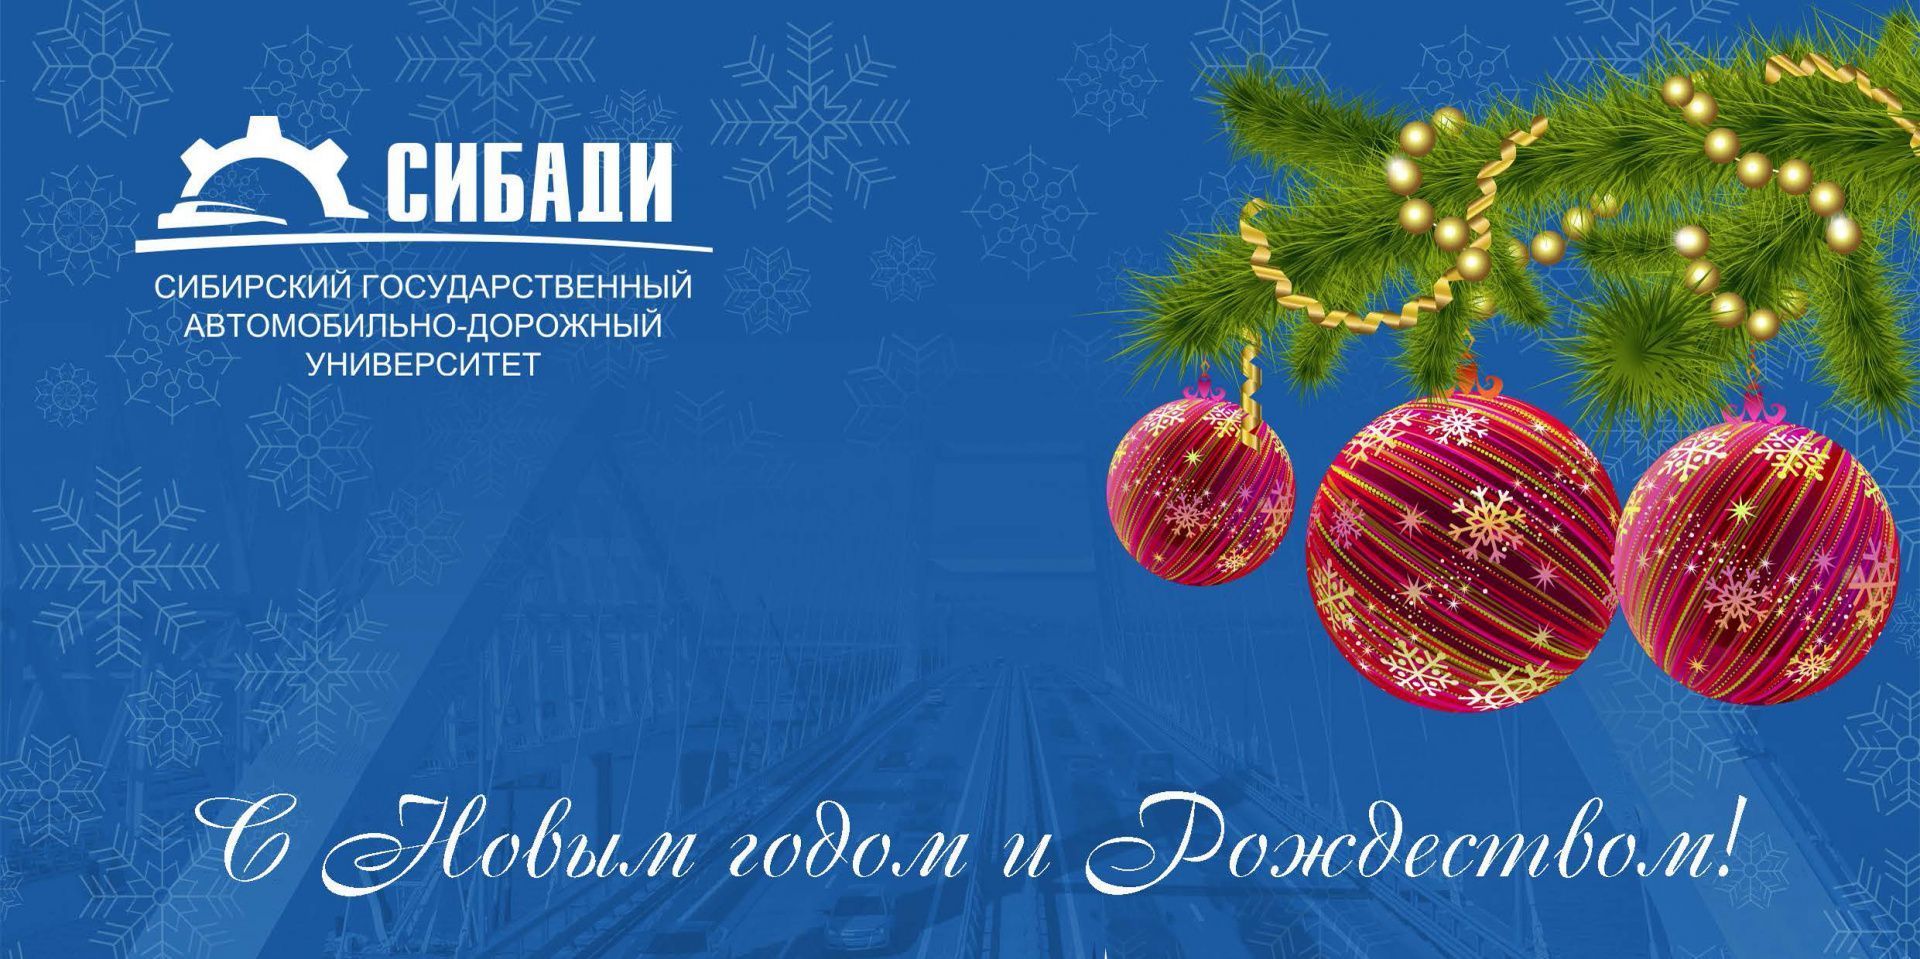 Поздравление ректора СибАДИ А.П. Жигадло с Новым годом